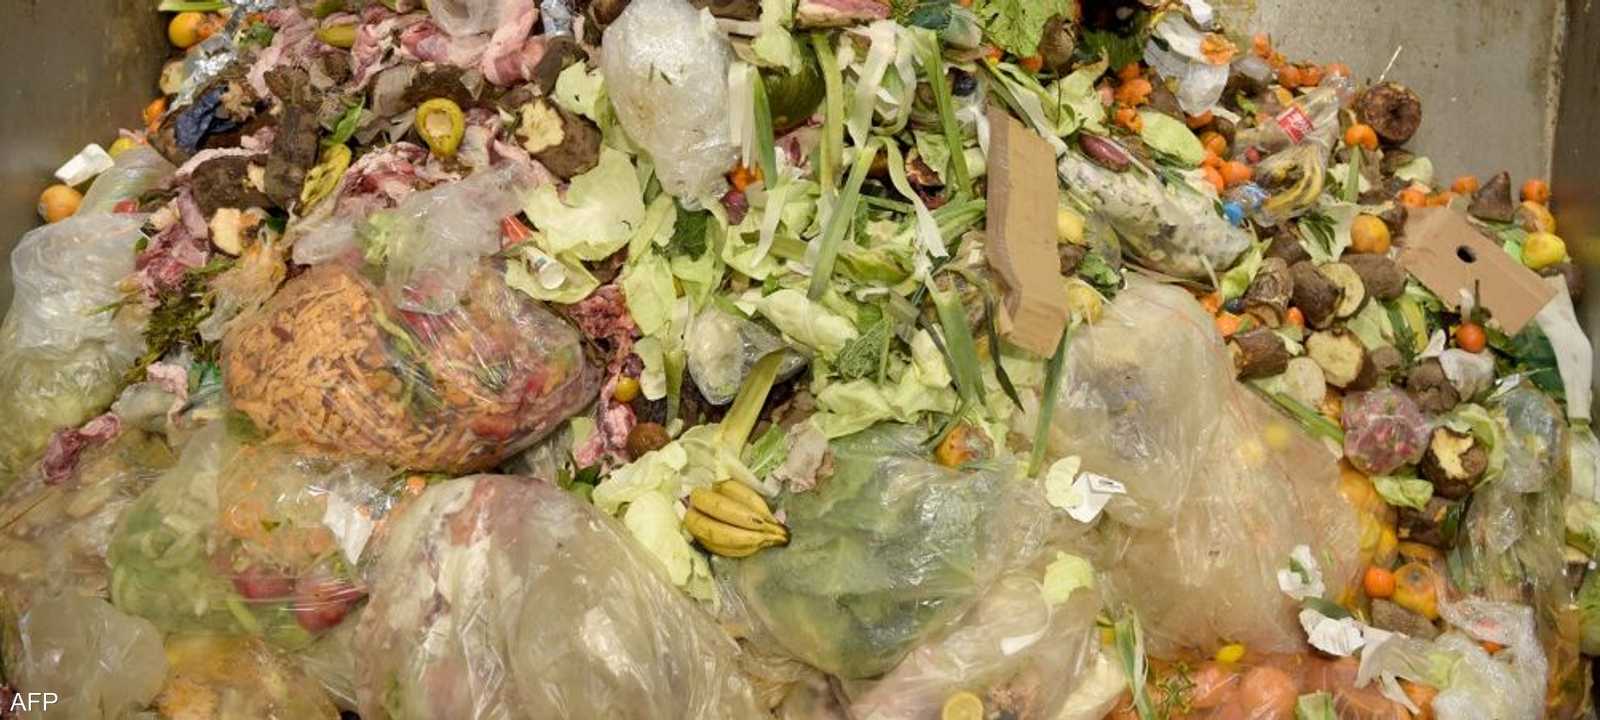 أرشيفية.. يتم رمي كميات كبيرة من الطعام في حاويات القمامة